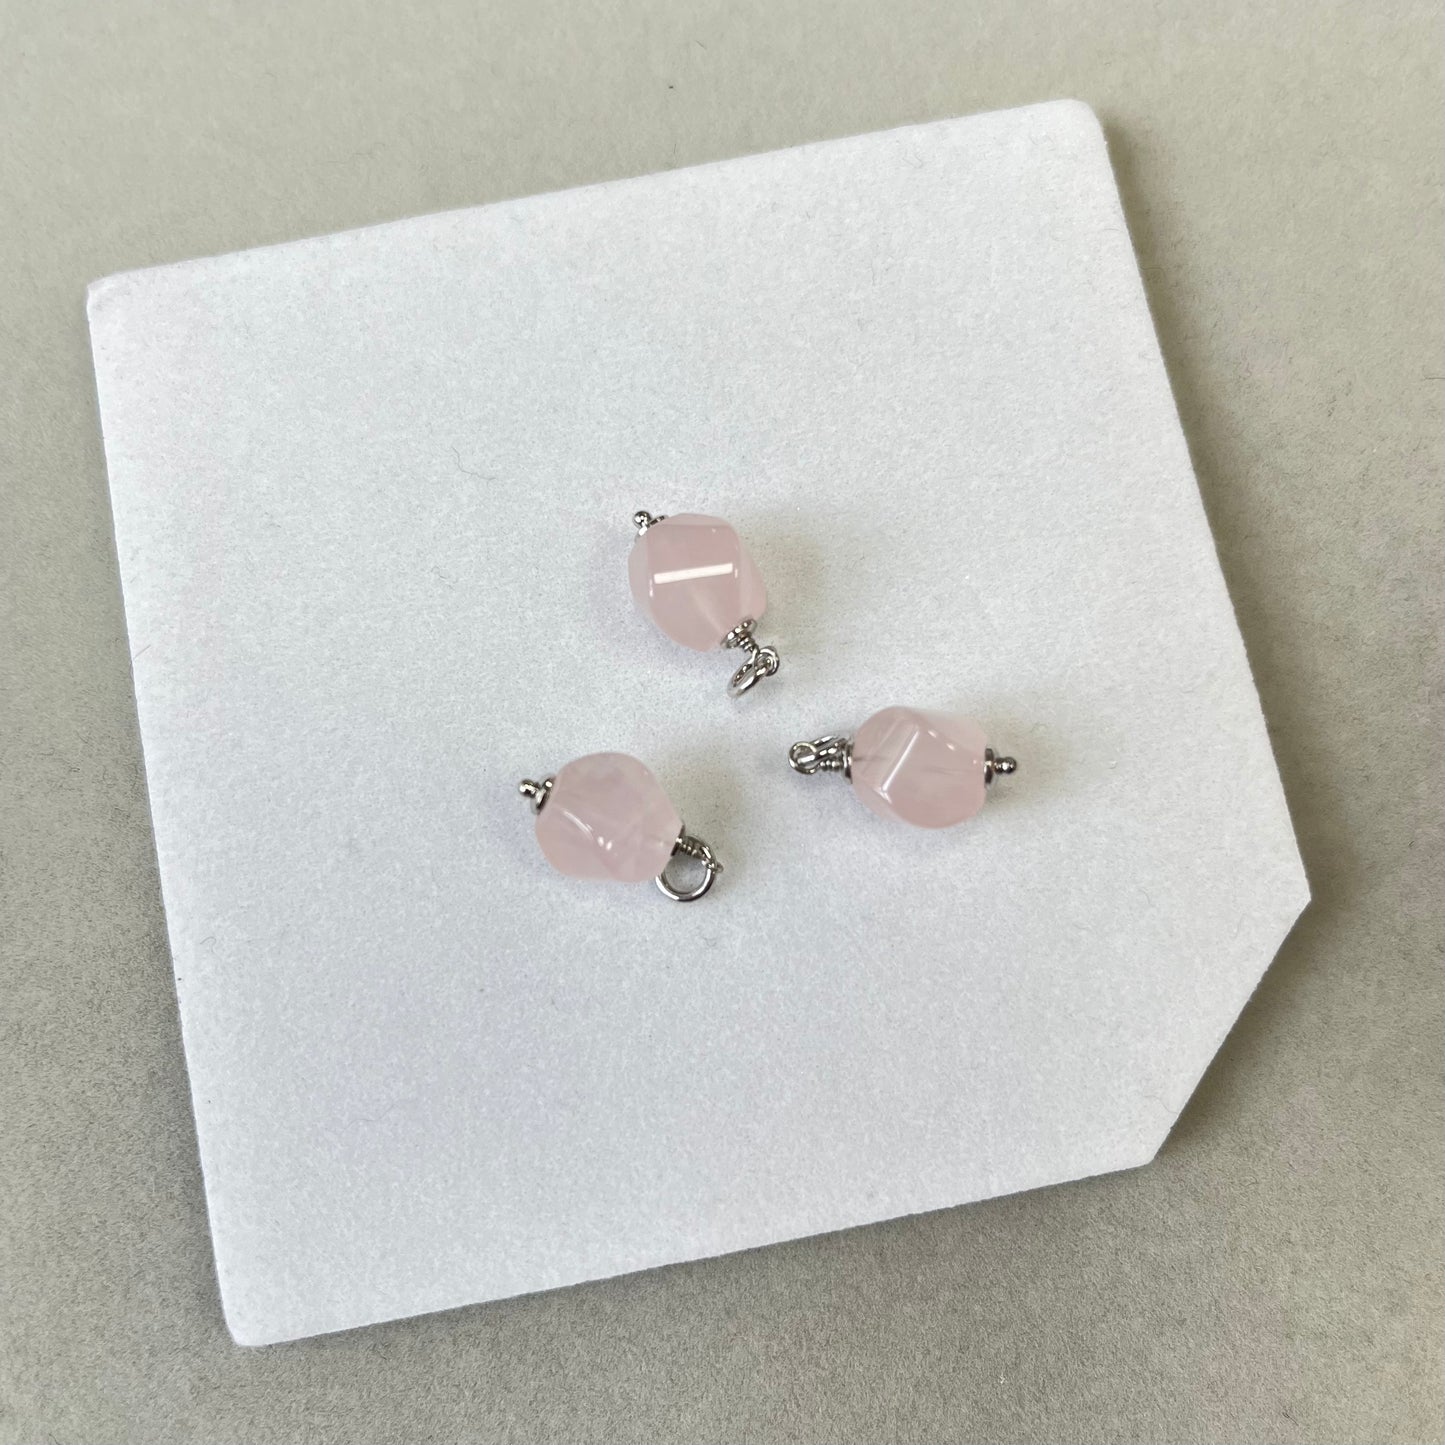 Charm (mini pendentif) en argent rhodié avec pierres naturelles - quartz rose - 15